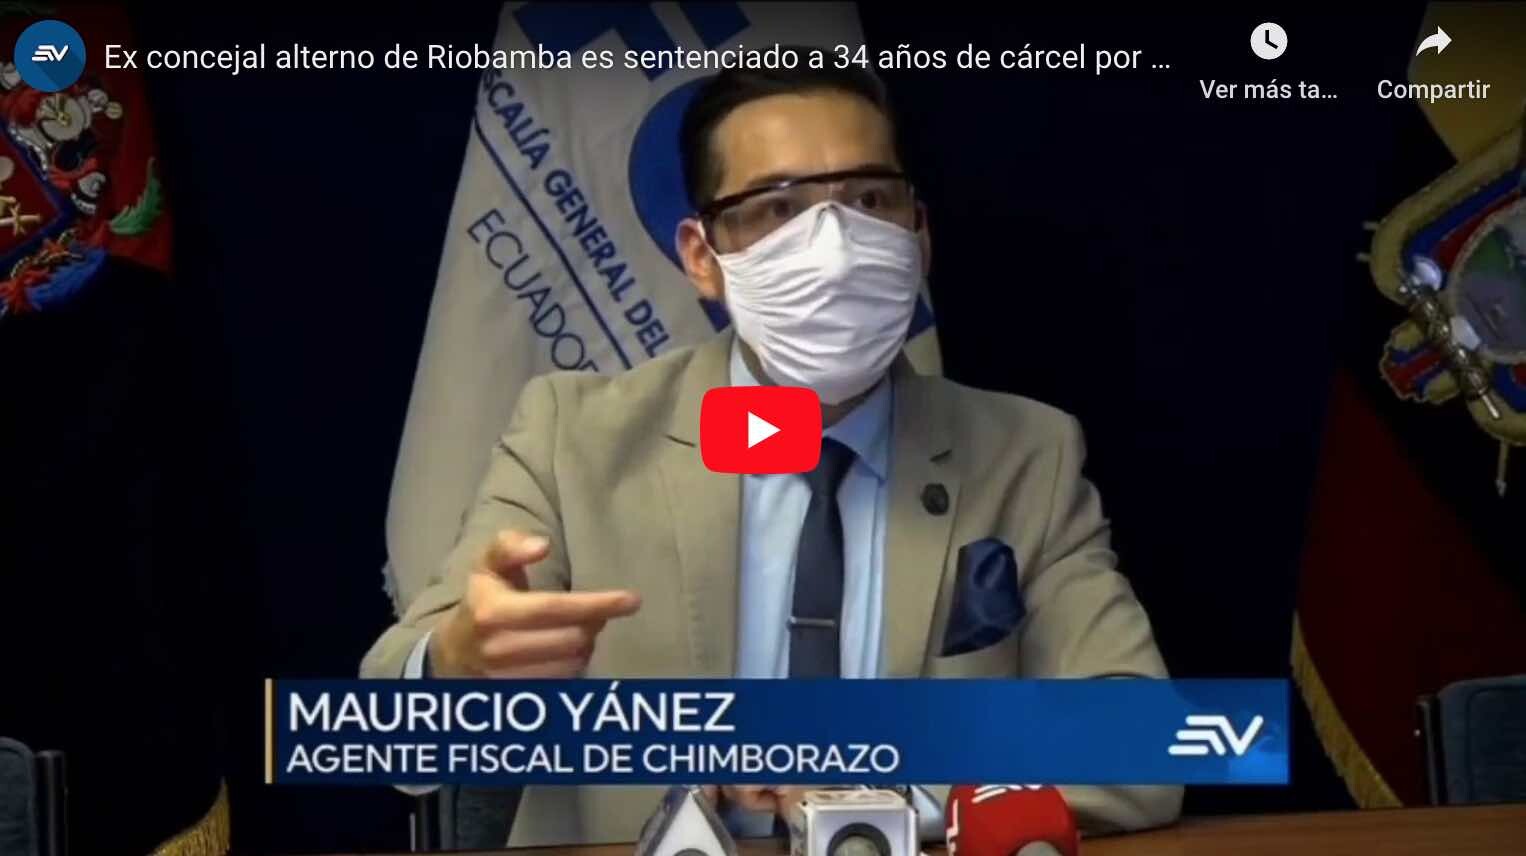 VIDEO: 34 años de cárcel para asesino de concejal de Riobamba